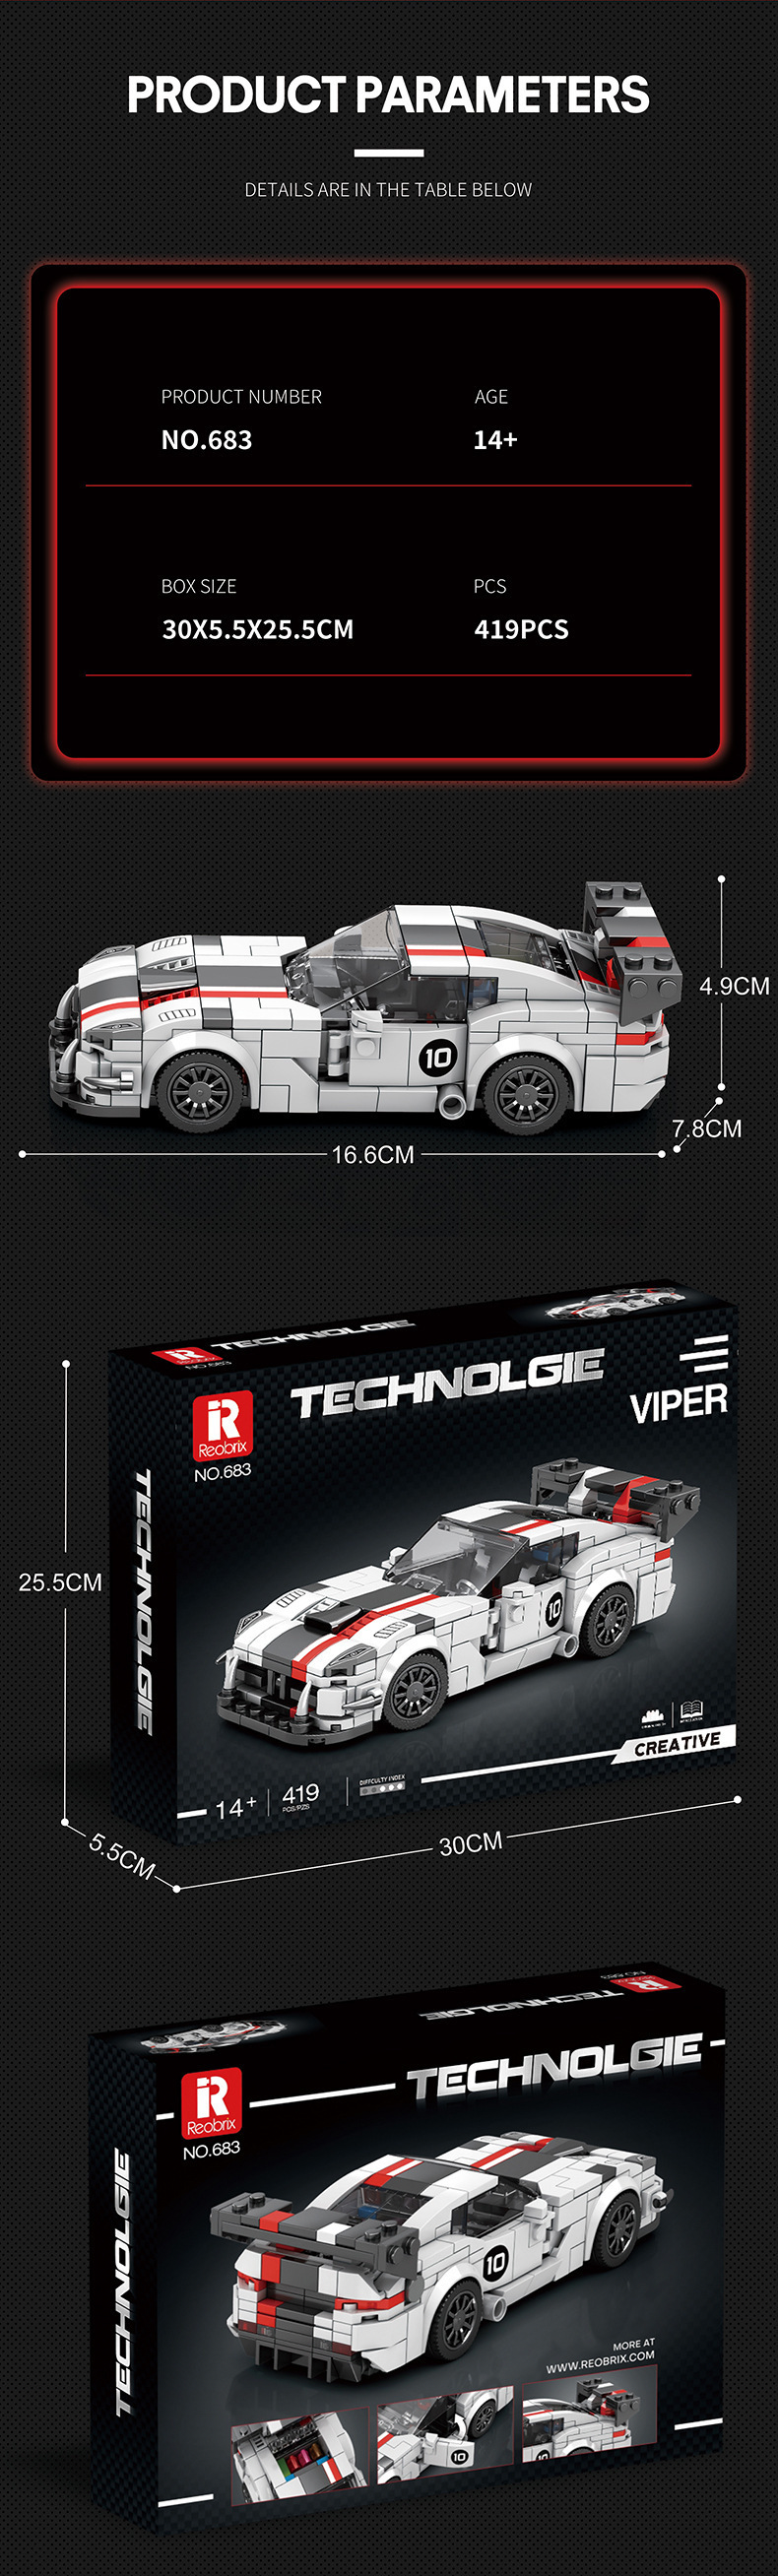 Reobrix 683 VIPER coche deportivo serie de tecnología de coches deportivos juego de juguete de bloques de construcción